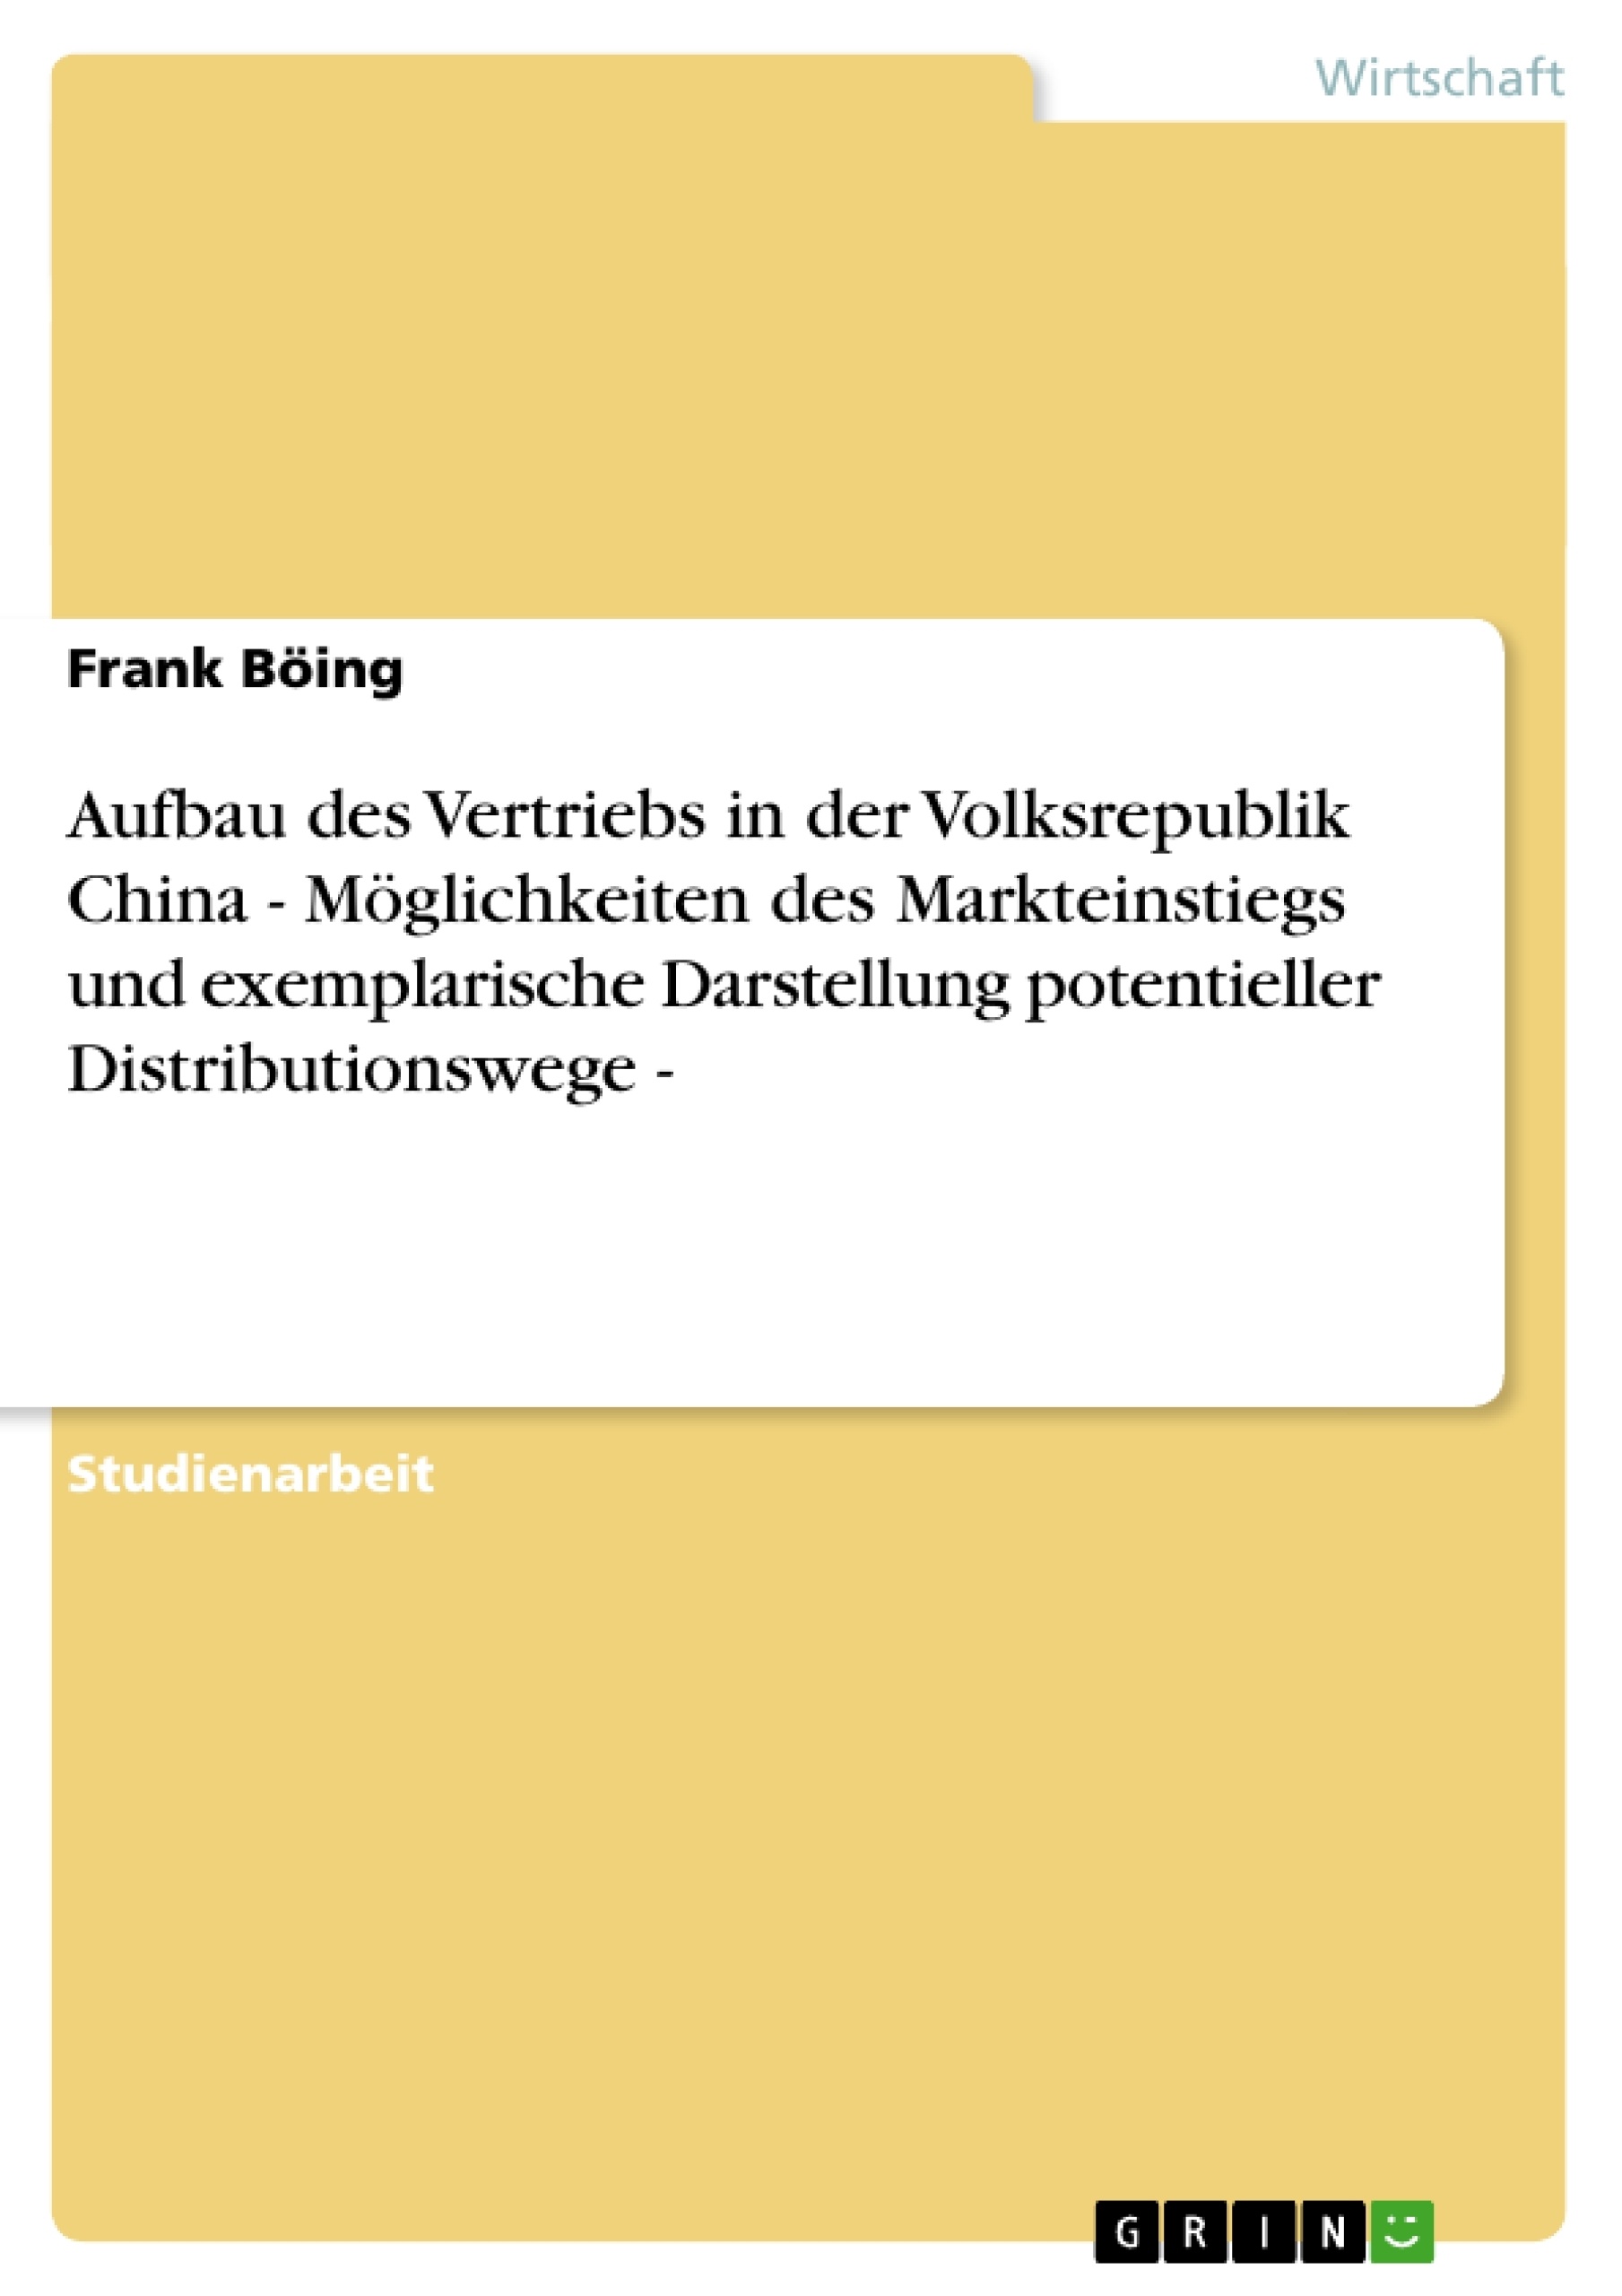 Title: Aufbau des Vertriebs in der Volksrepublik China - Möglichkeiten des Markteinstiegs und exemplarische Darstellung potentieller Distributionswege -